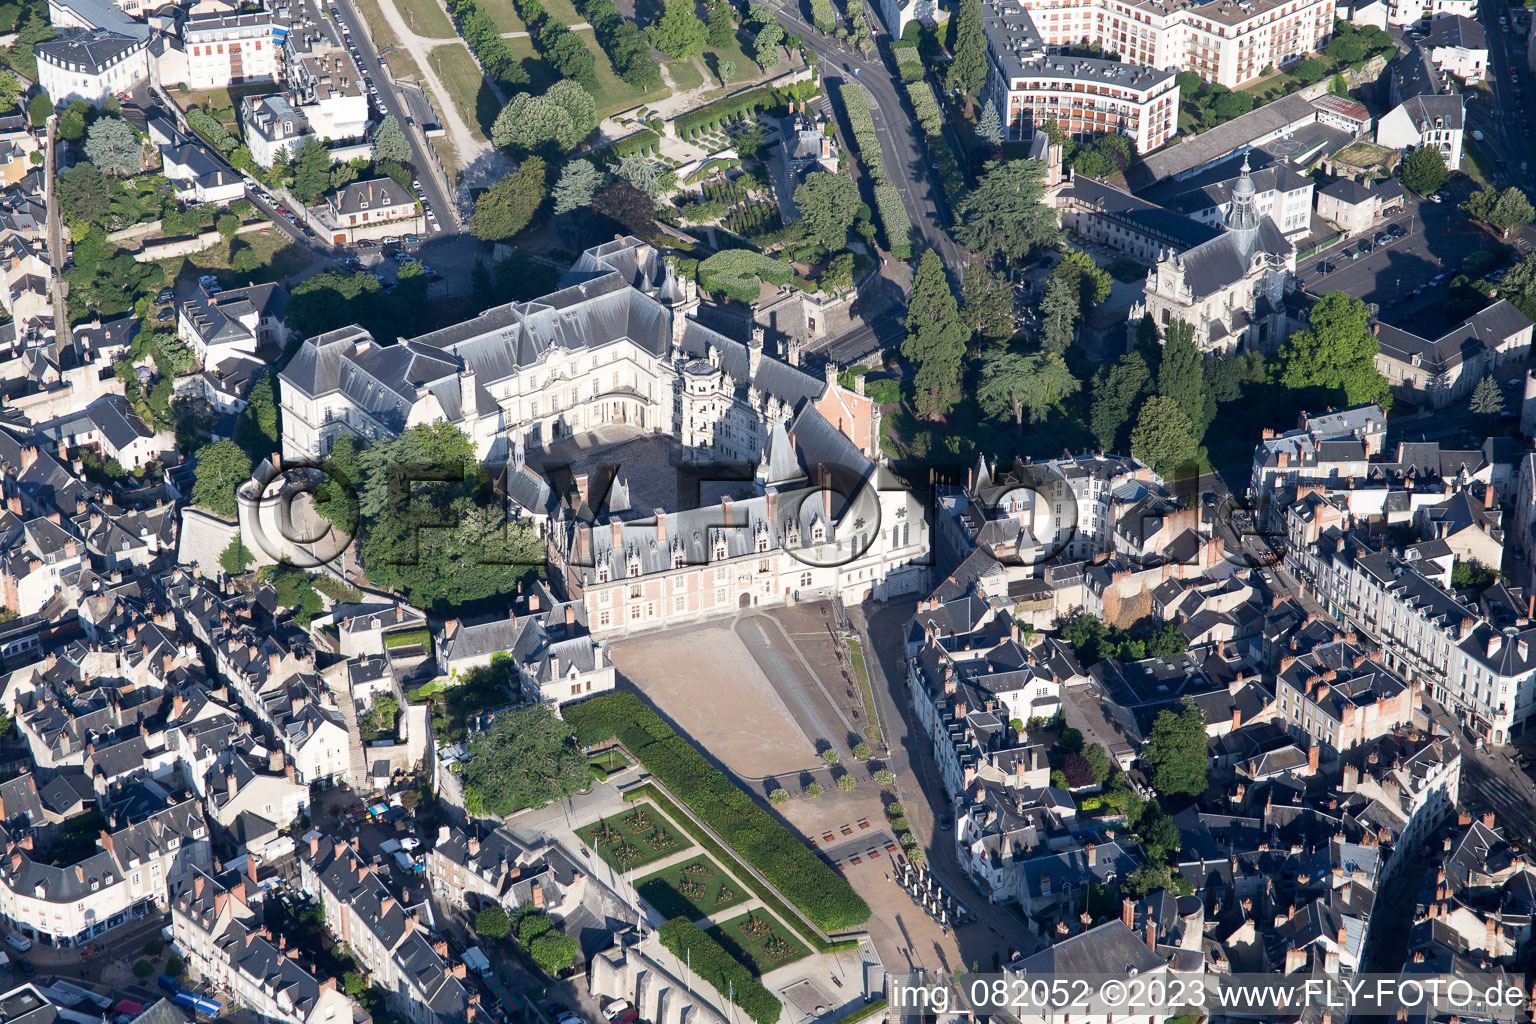 Blois im Bundesland Loir-et-Cher, Frankreich von oben gesehen